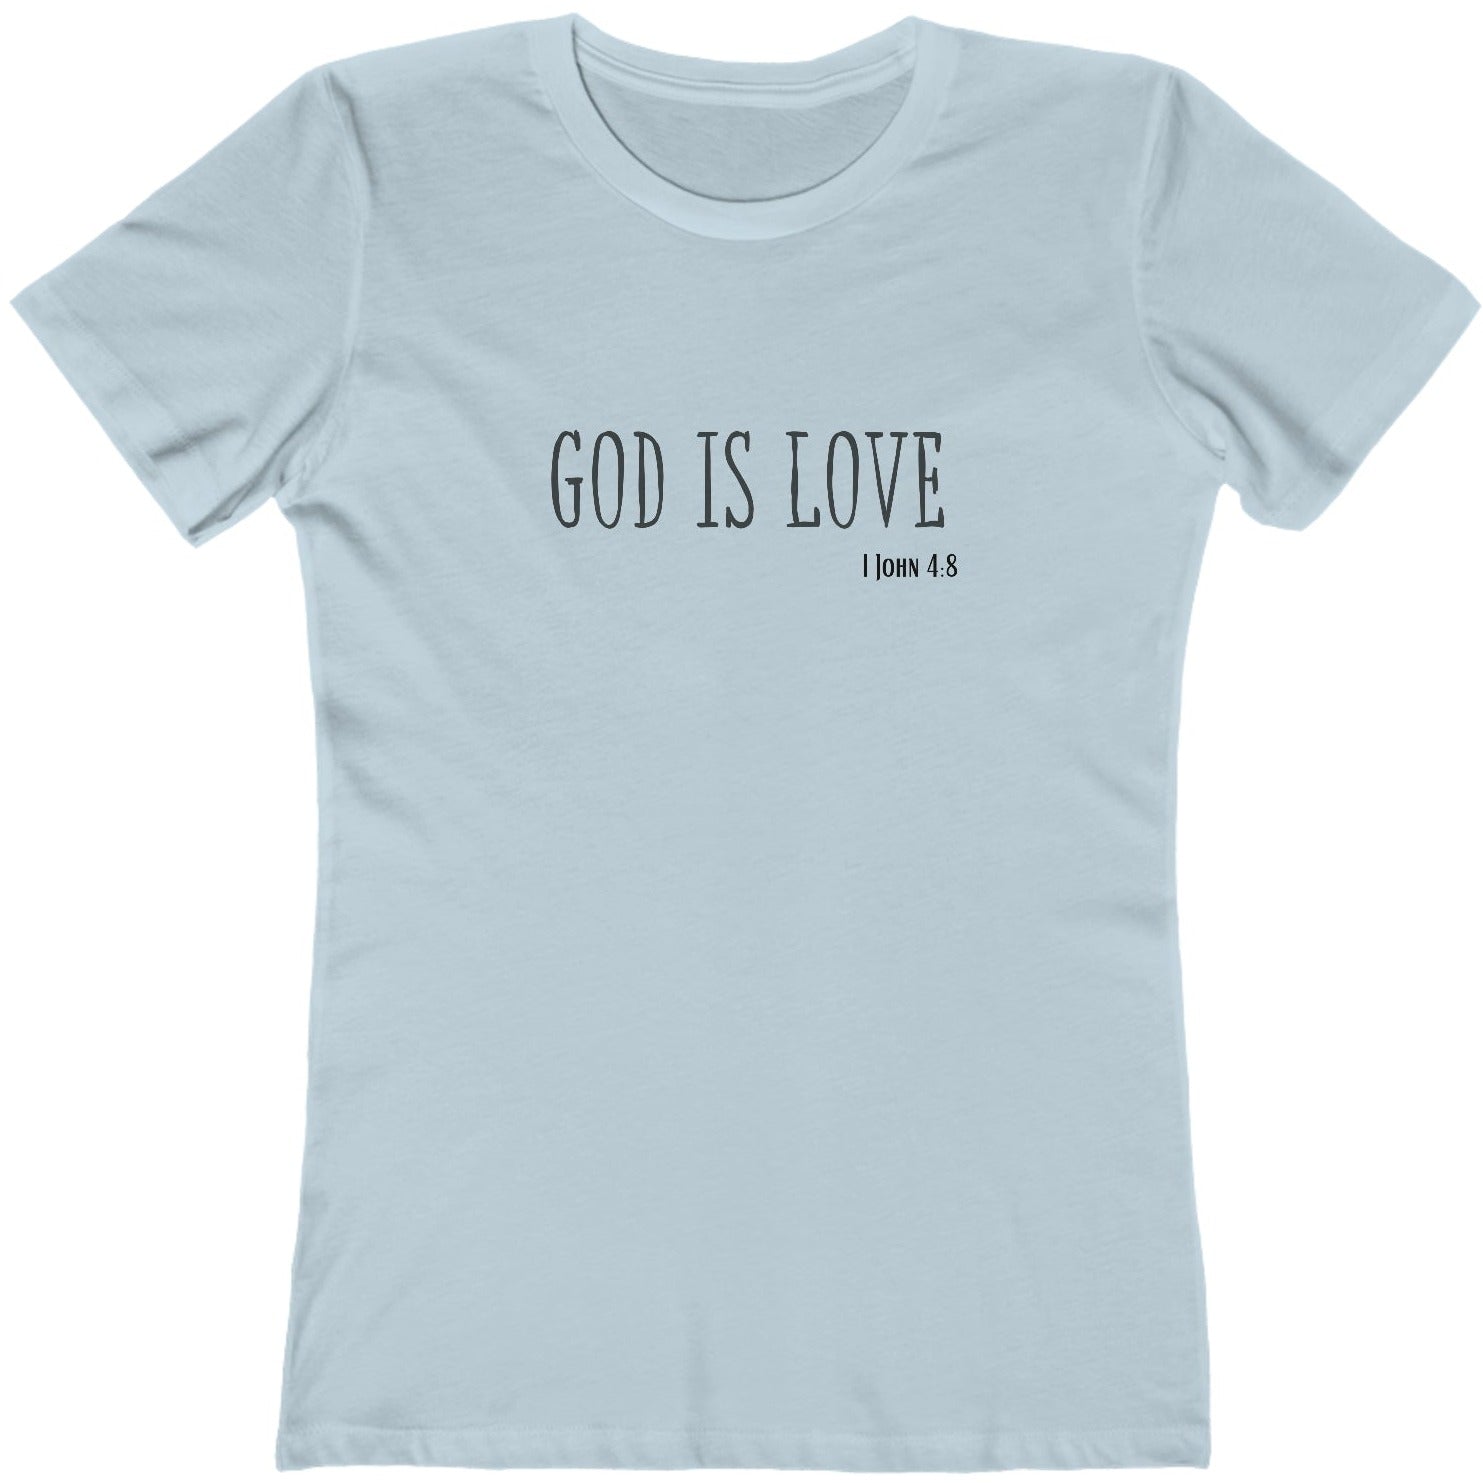 1 John 4:8 God is Love, Christian T-shirt for Women light blue